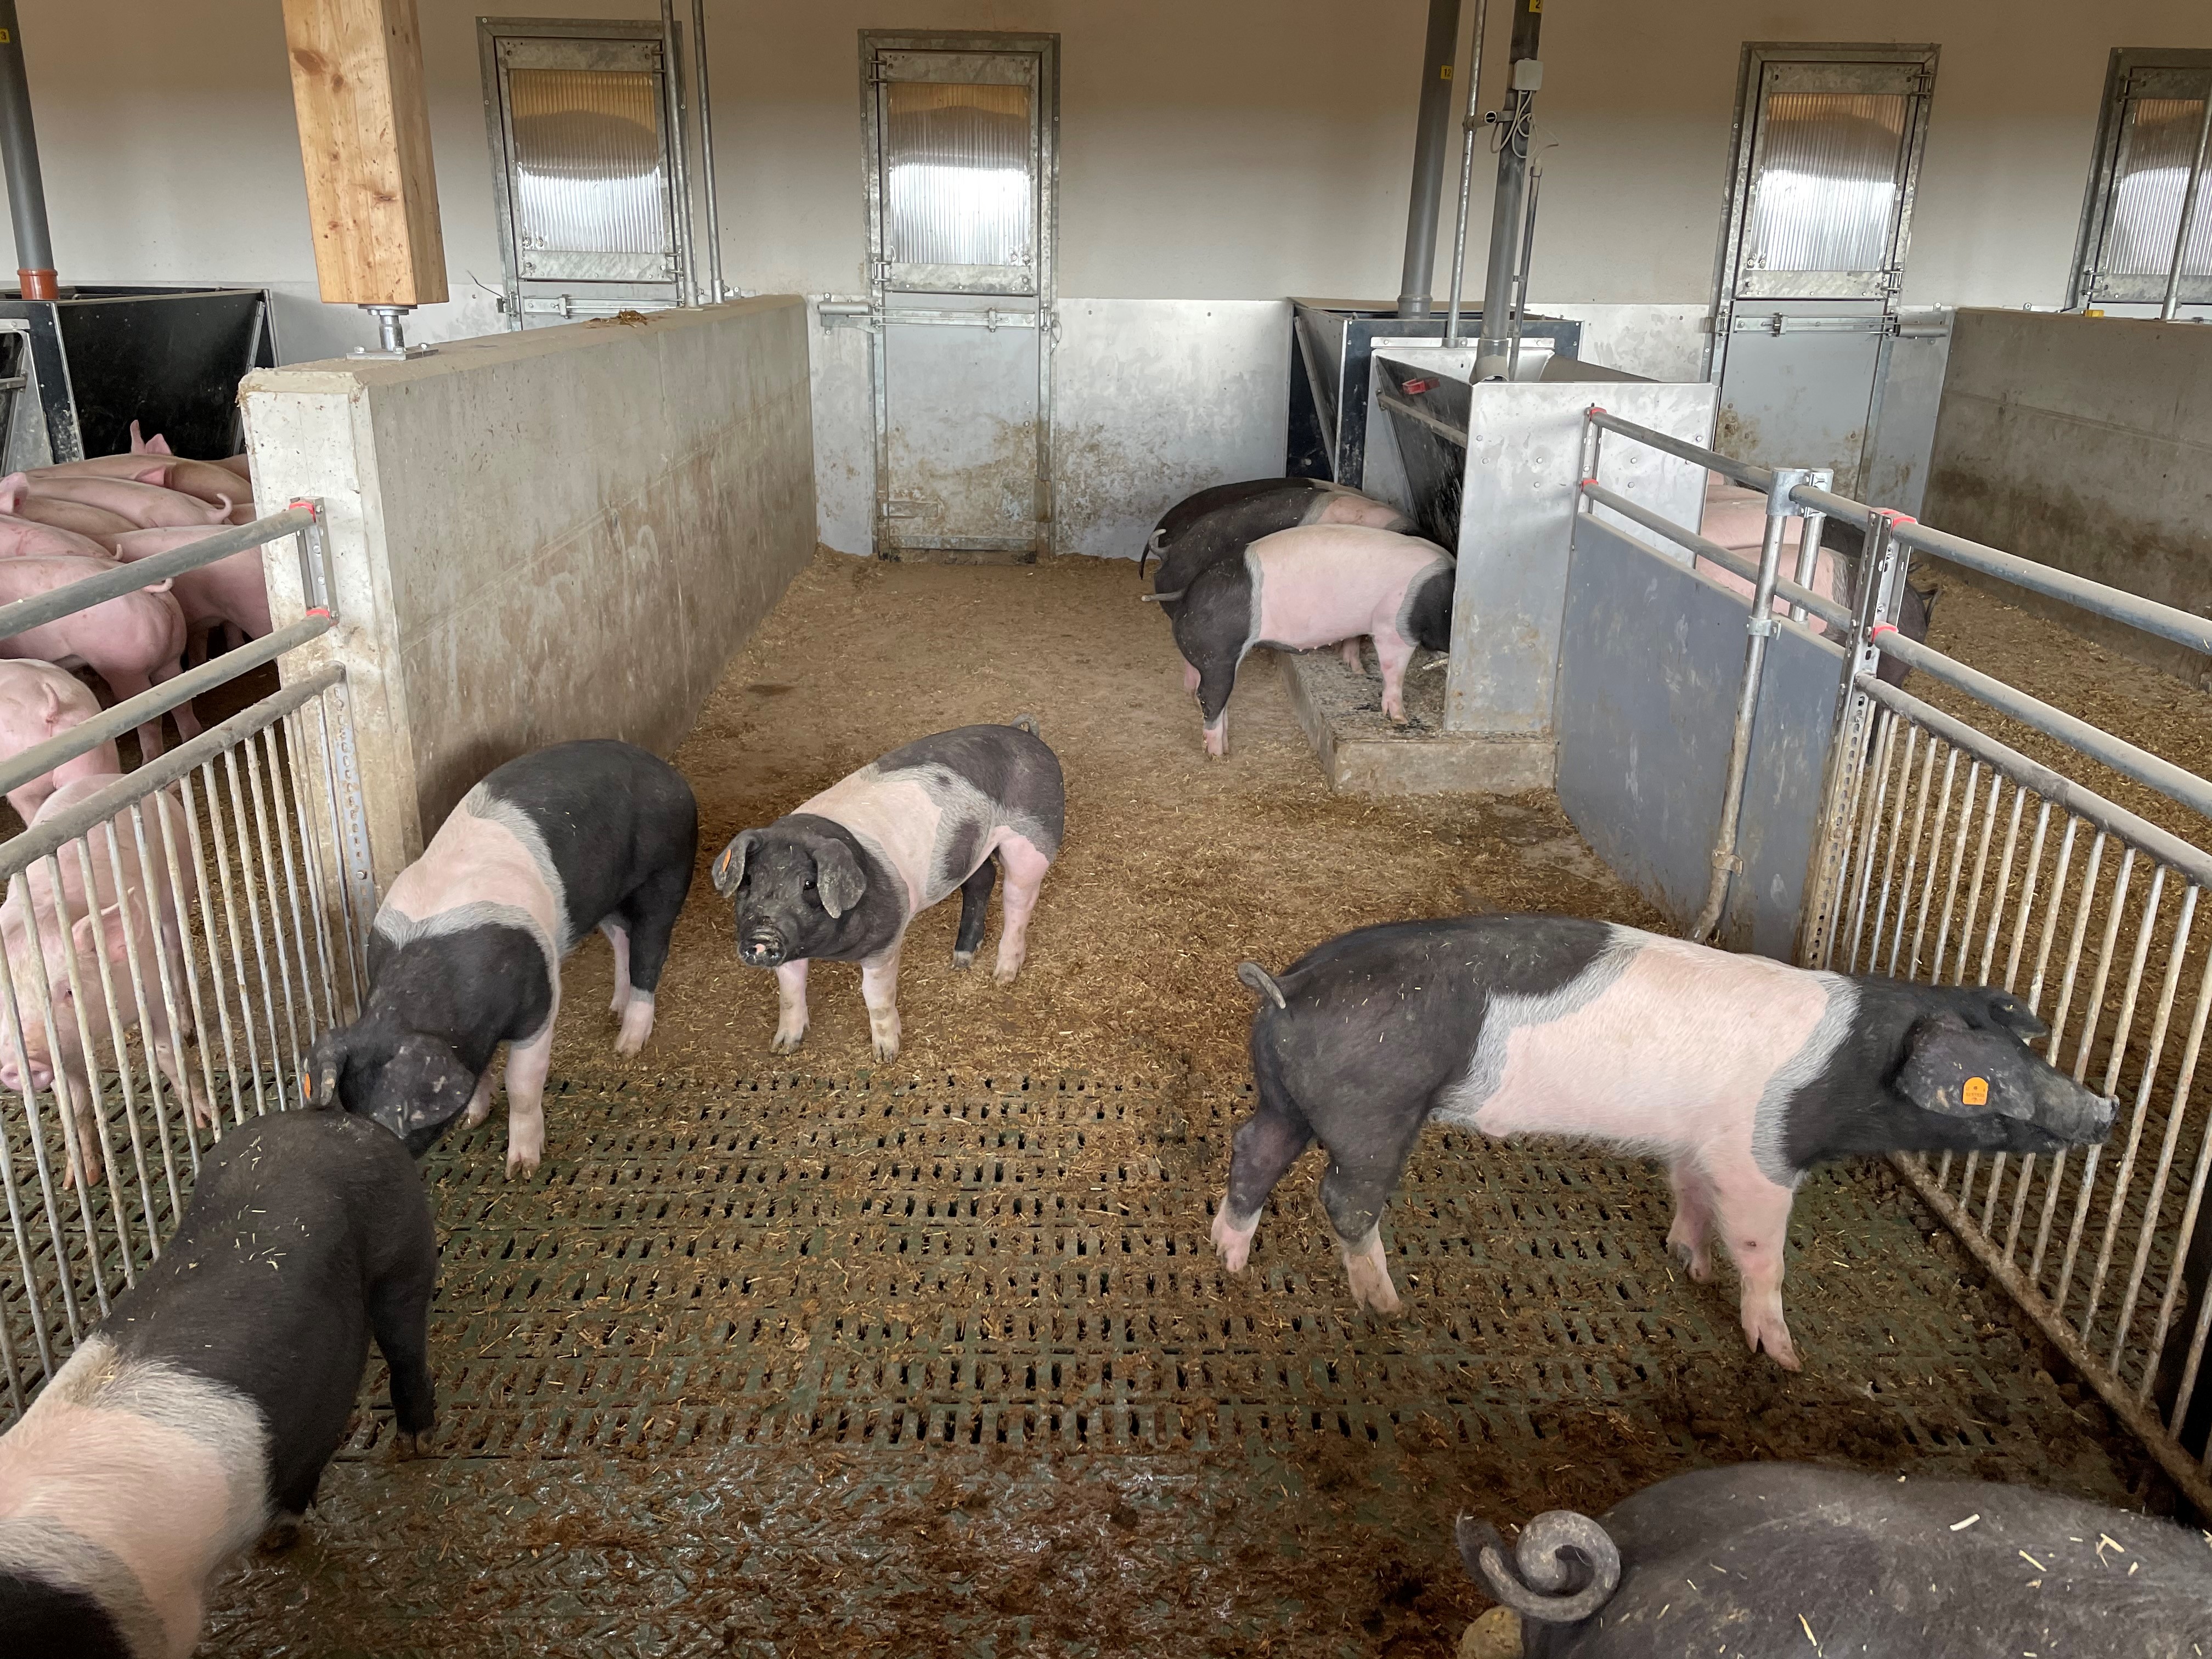 Eingestreuter Liege- bzw. Ruhebereich im untersuchten Schweinemast — Tierwohlstall